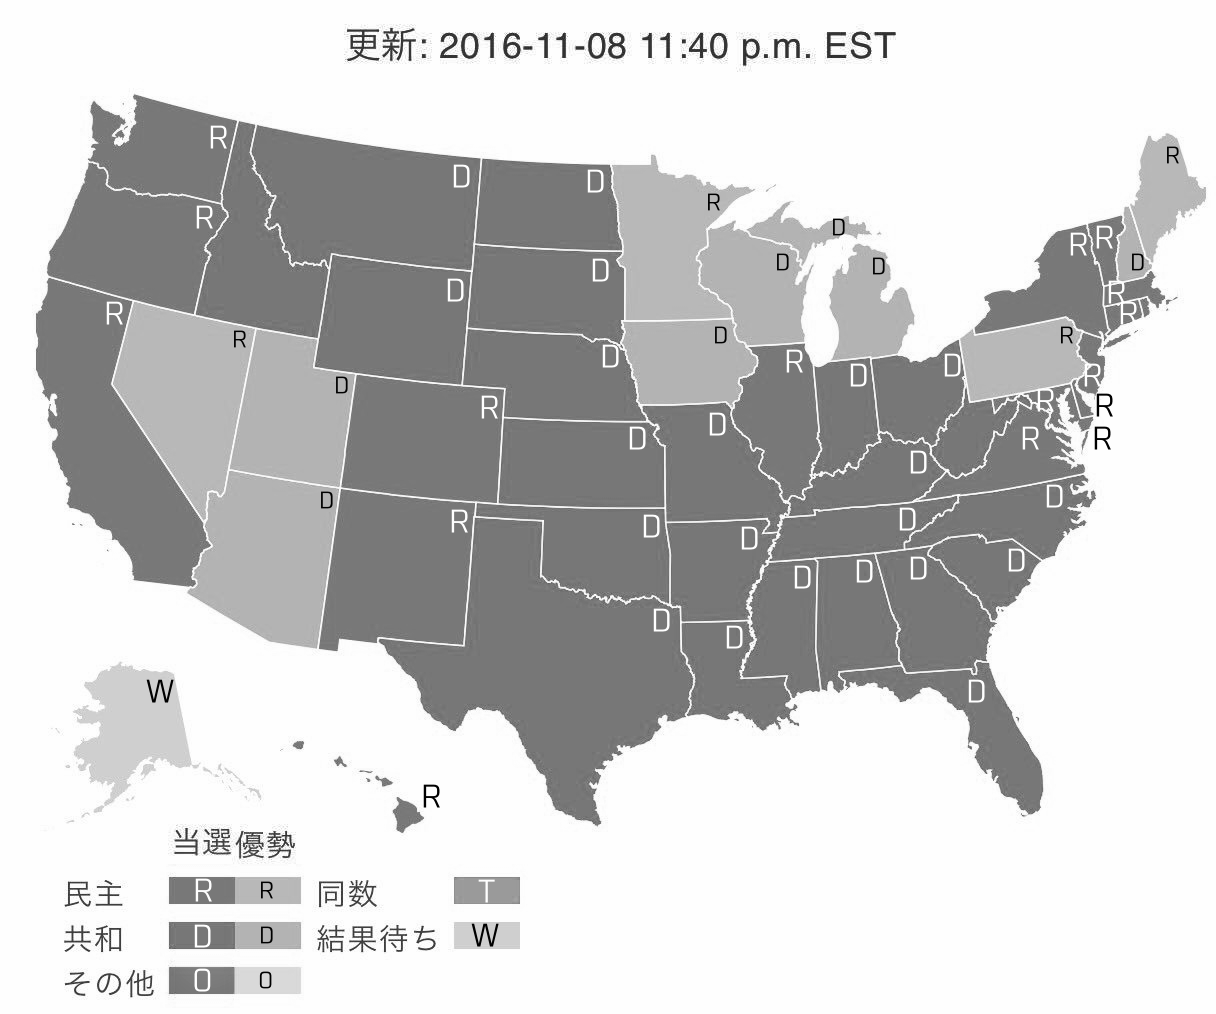 色に加えて文字を追加した大統領選挙速報地図(モノクロ版)